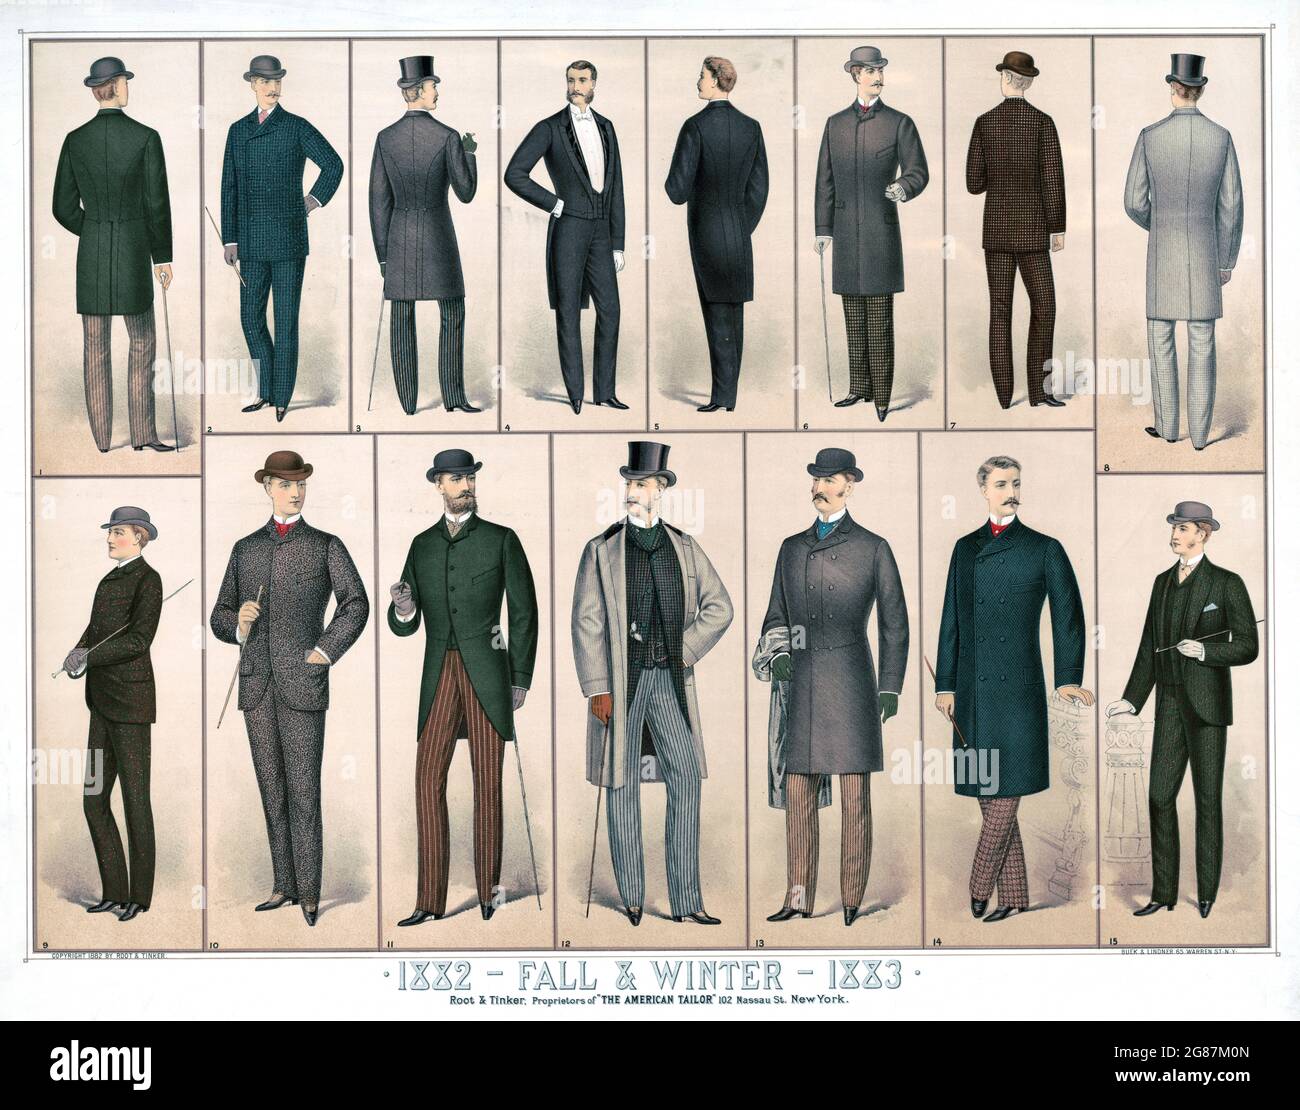 Vintage-Werbung. Mode von 1882–1883 Winter/Herbst. Veröffentlicht in New York 1882 von Root & Tinker. Stockfoto